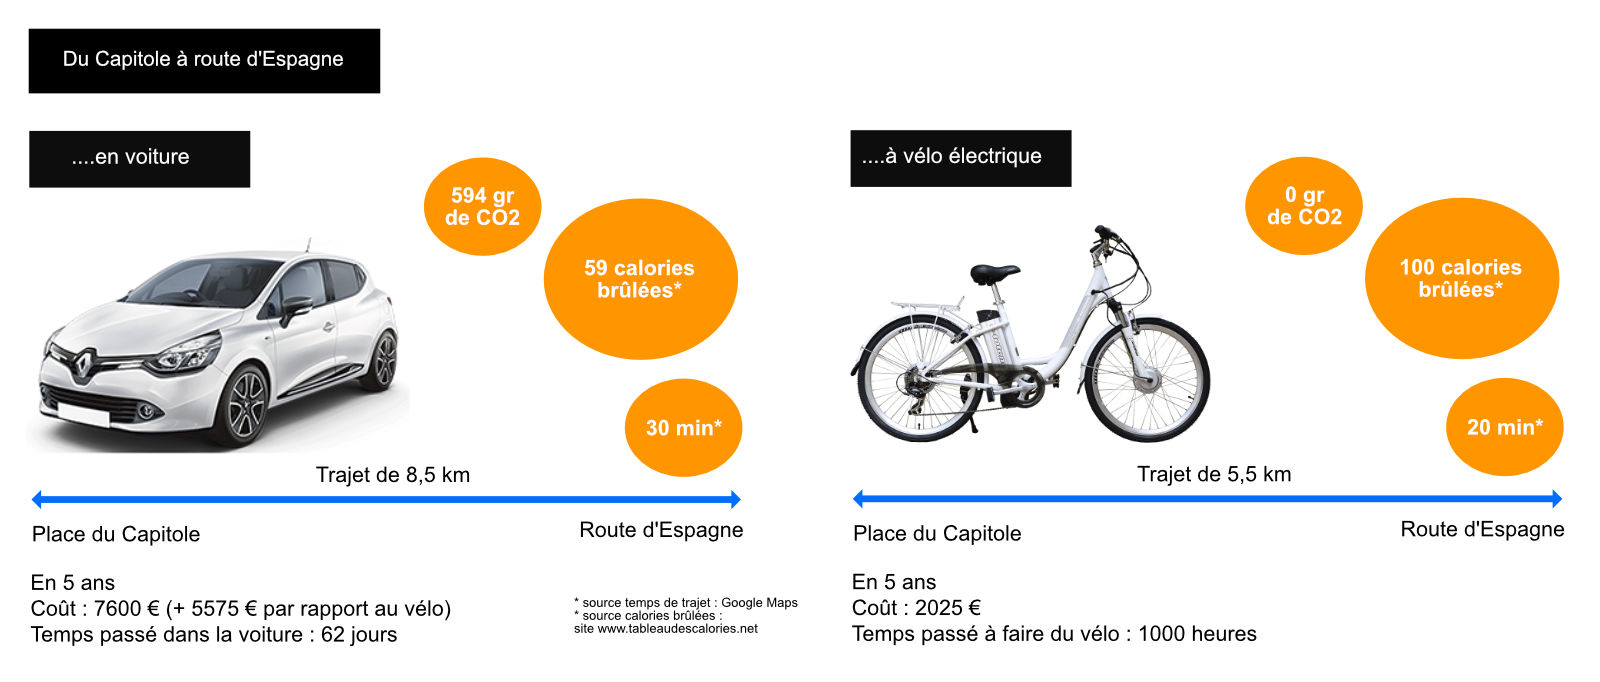 Comparaison vélo électrique - voiture